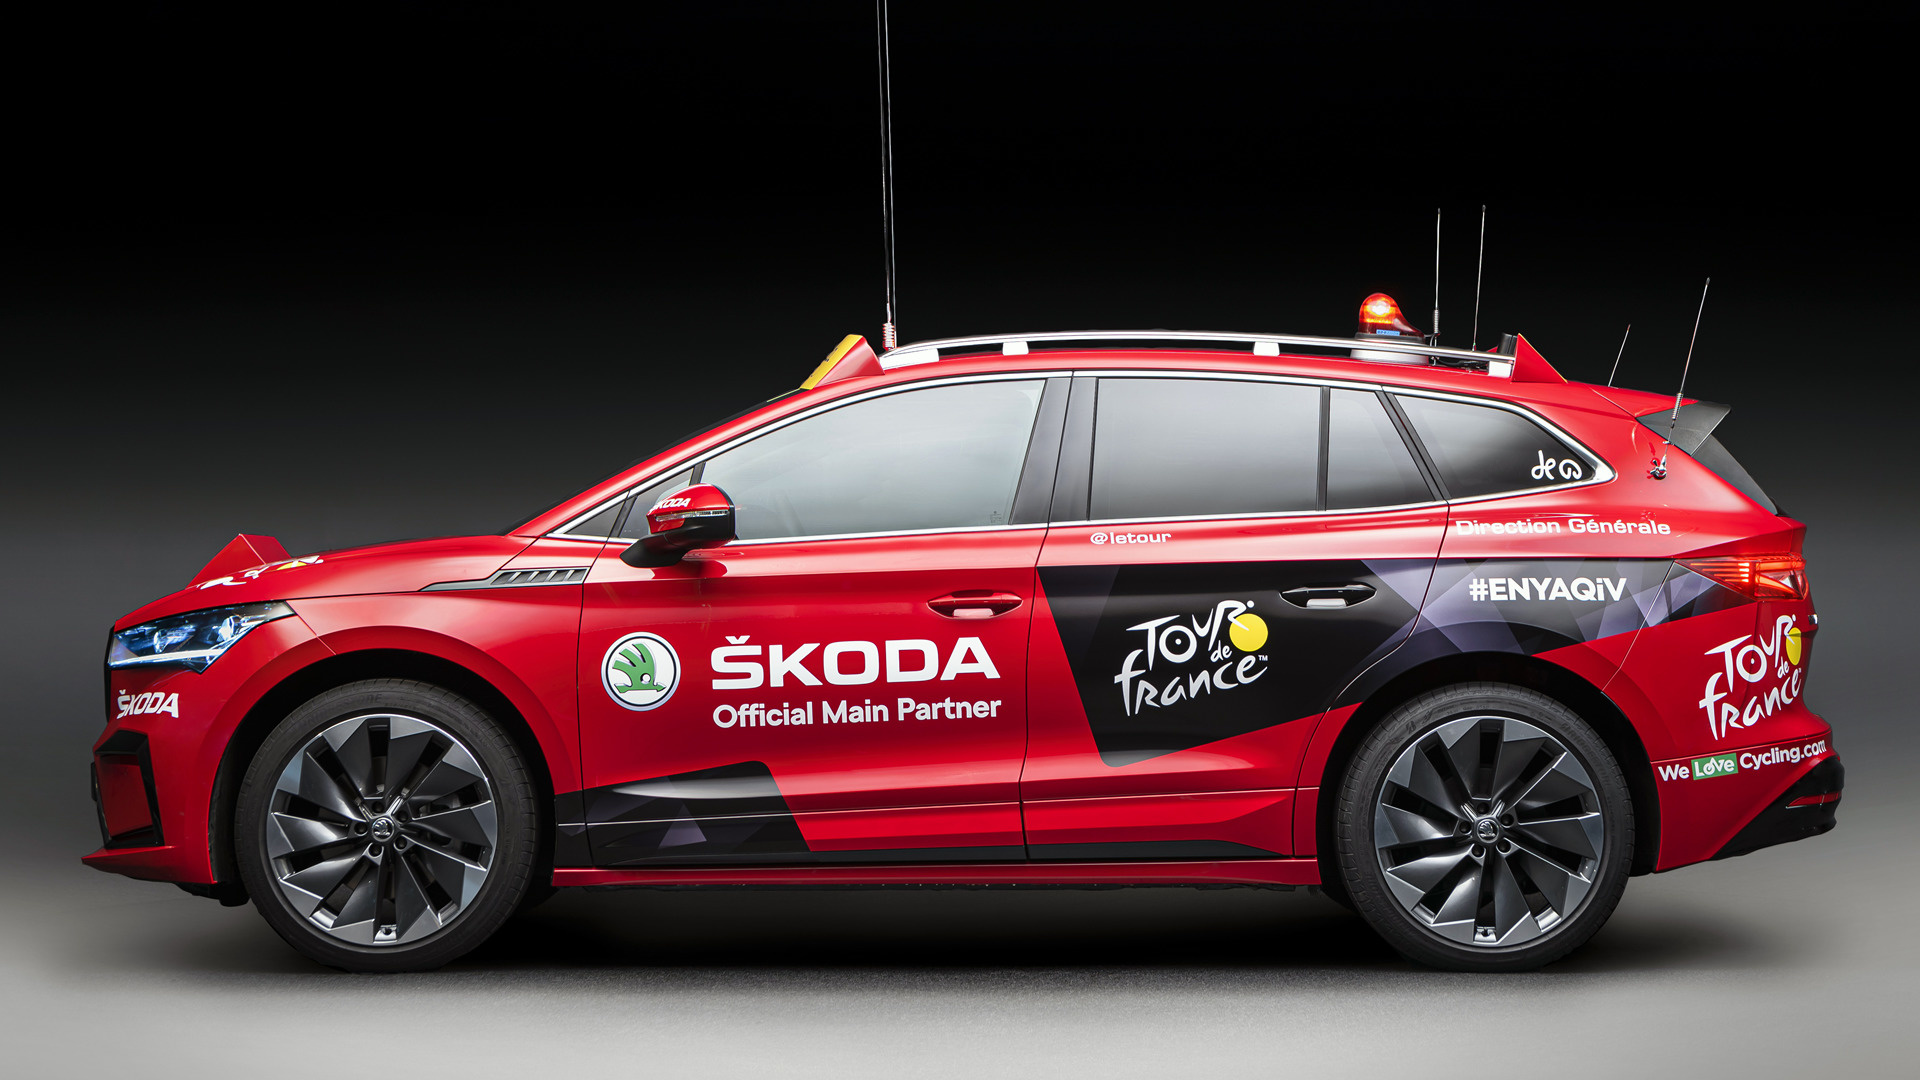 Скачать обои Ведущий Автомобиль Skoda Enyaq Iv Tour De France на телефон бесплатно